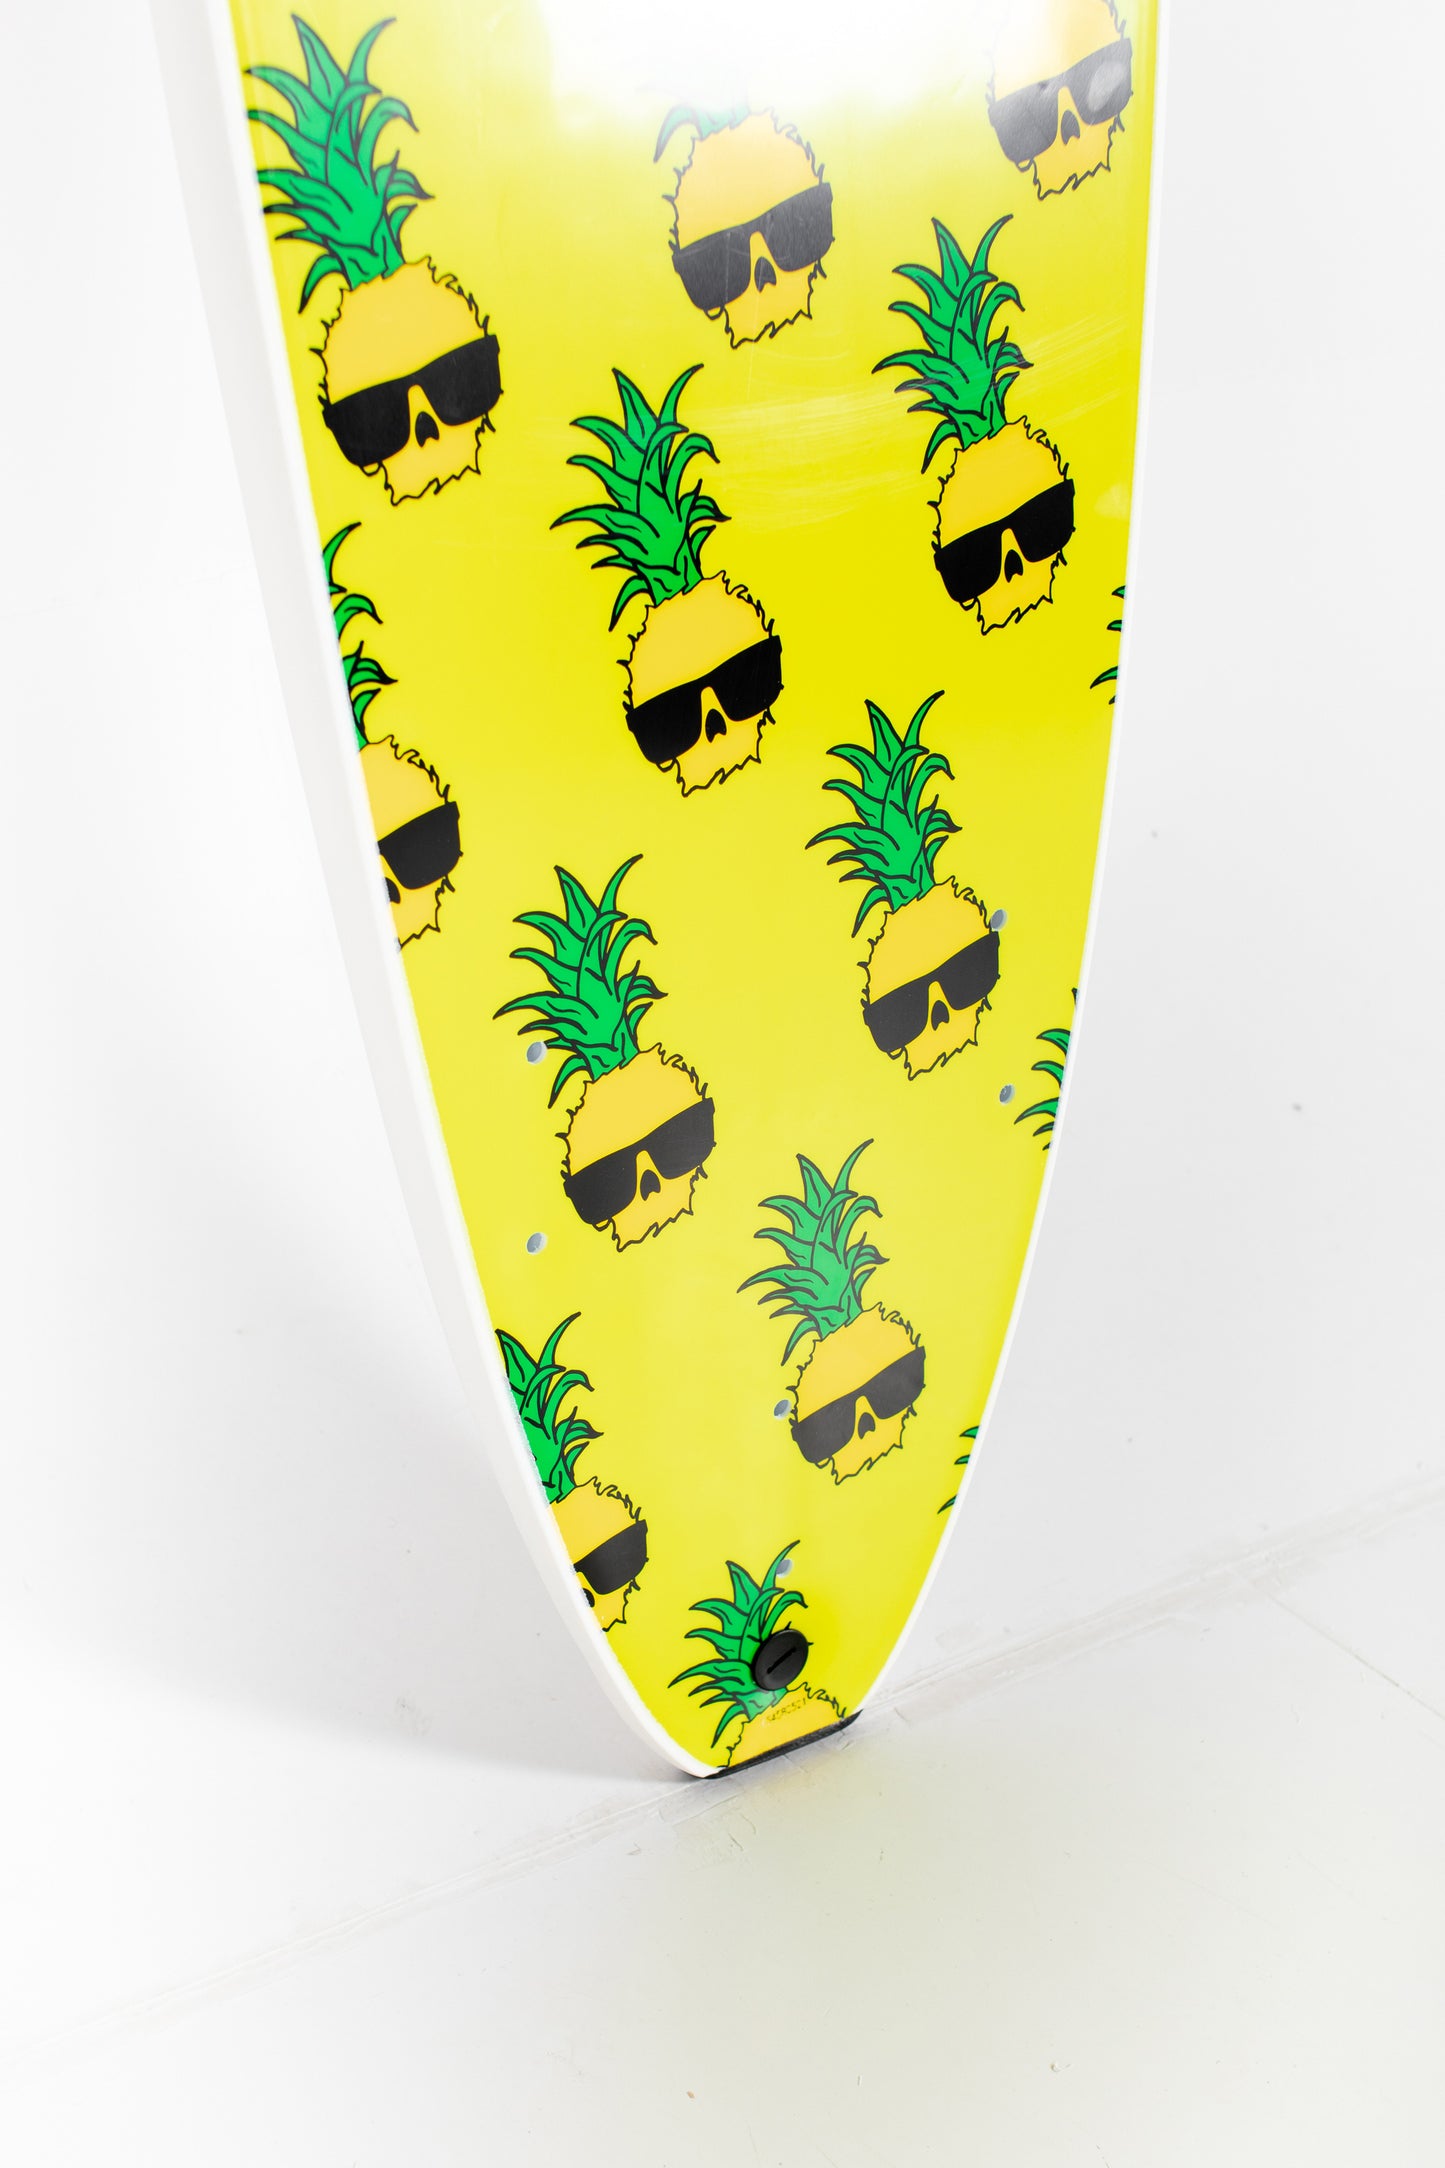 
                  
                    Pukas Surf Shop - Catch Surf - WAVE BANDIT - EASY RIDER x BEN GRAVY - 8'0" x 23" x 3,375" x 86L.
                  
                